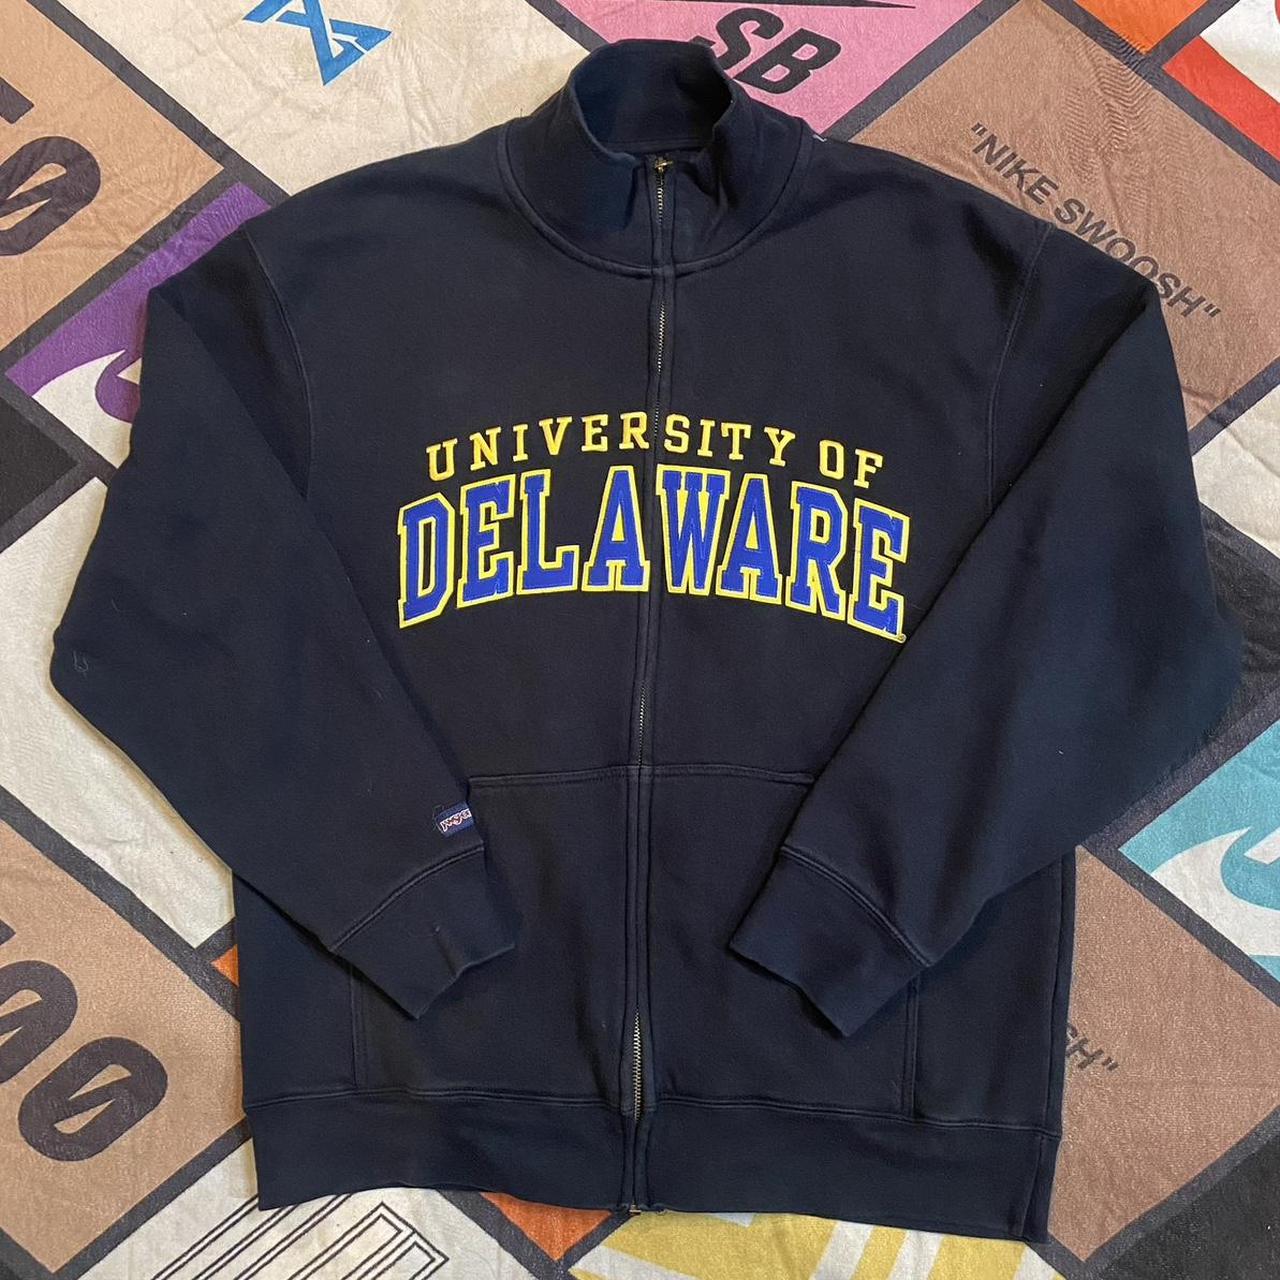 University of Delaware Zip Jacket with collar no... - Depop